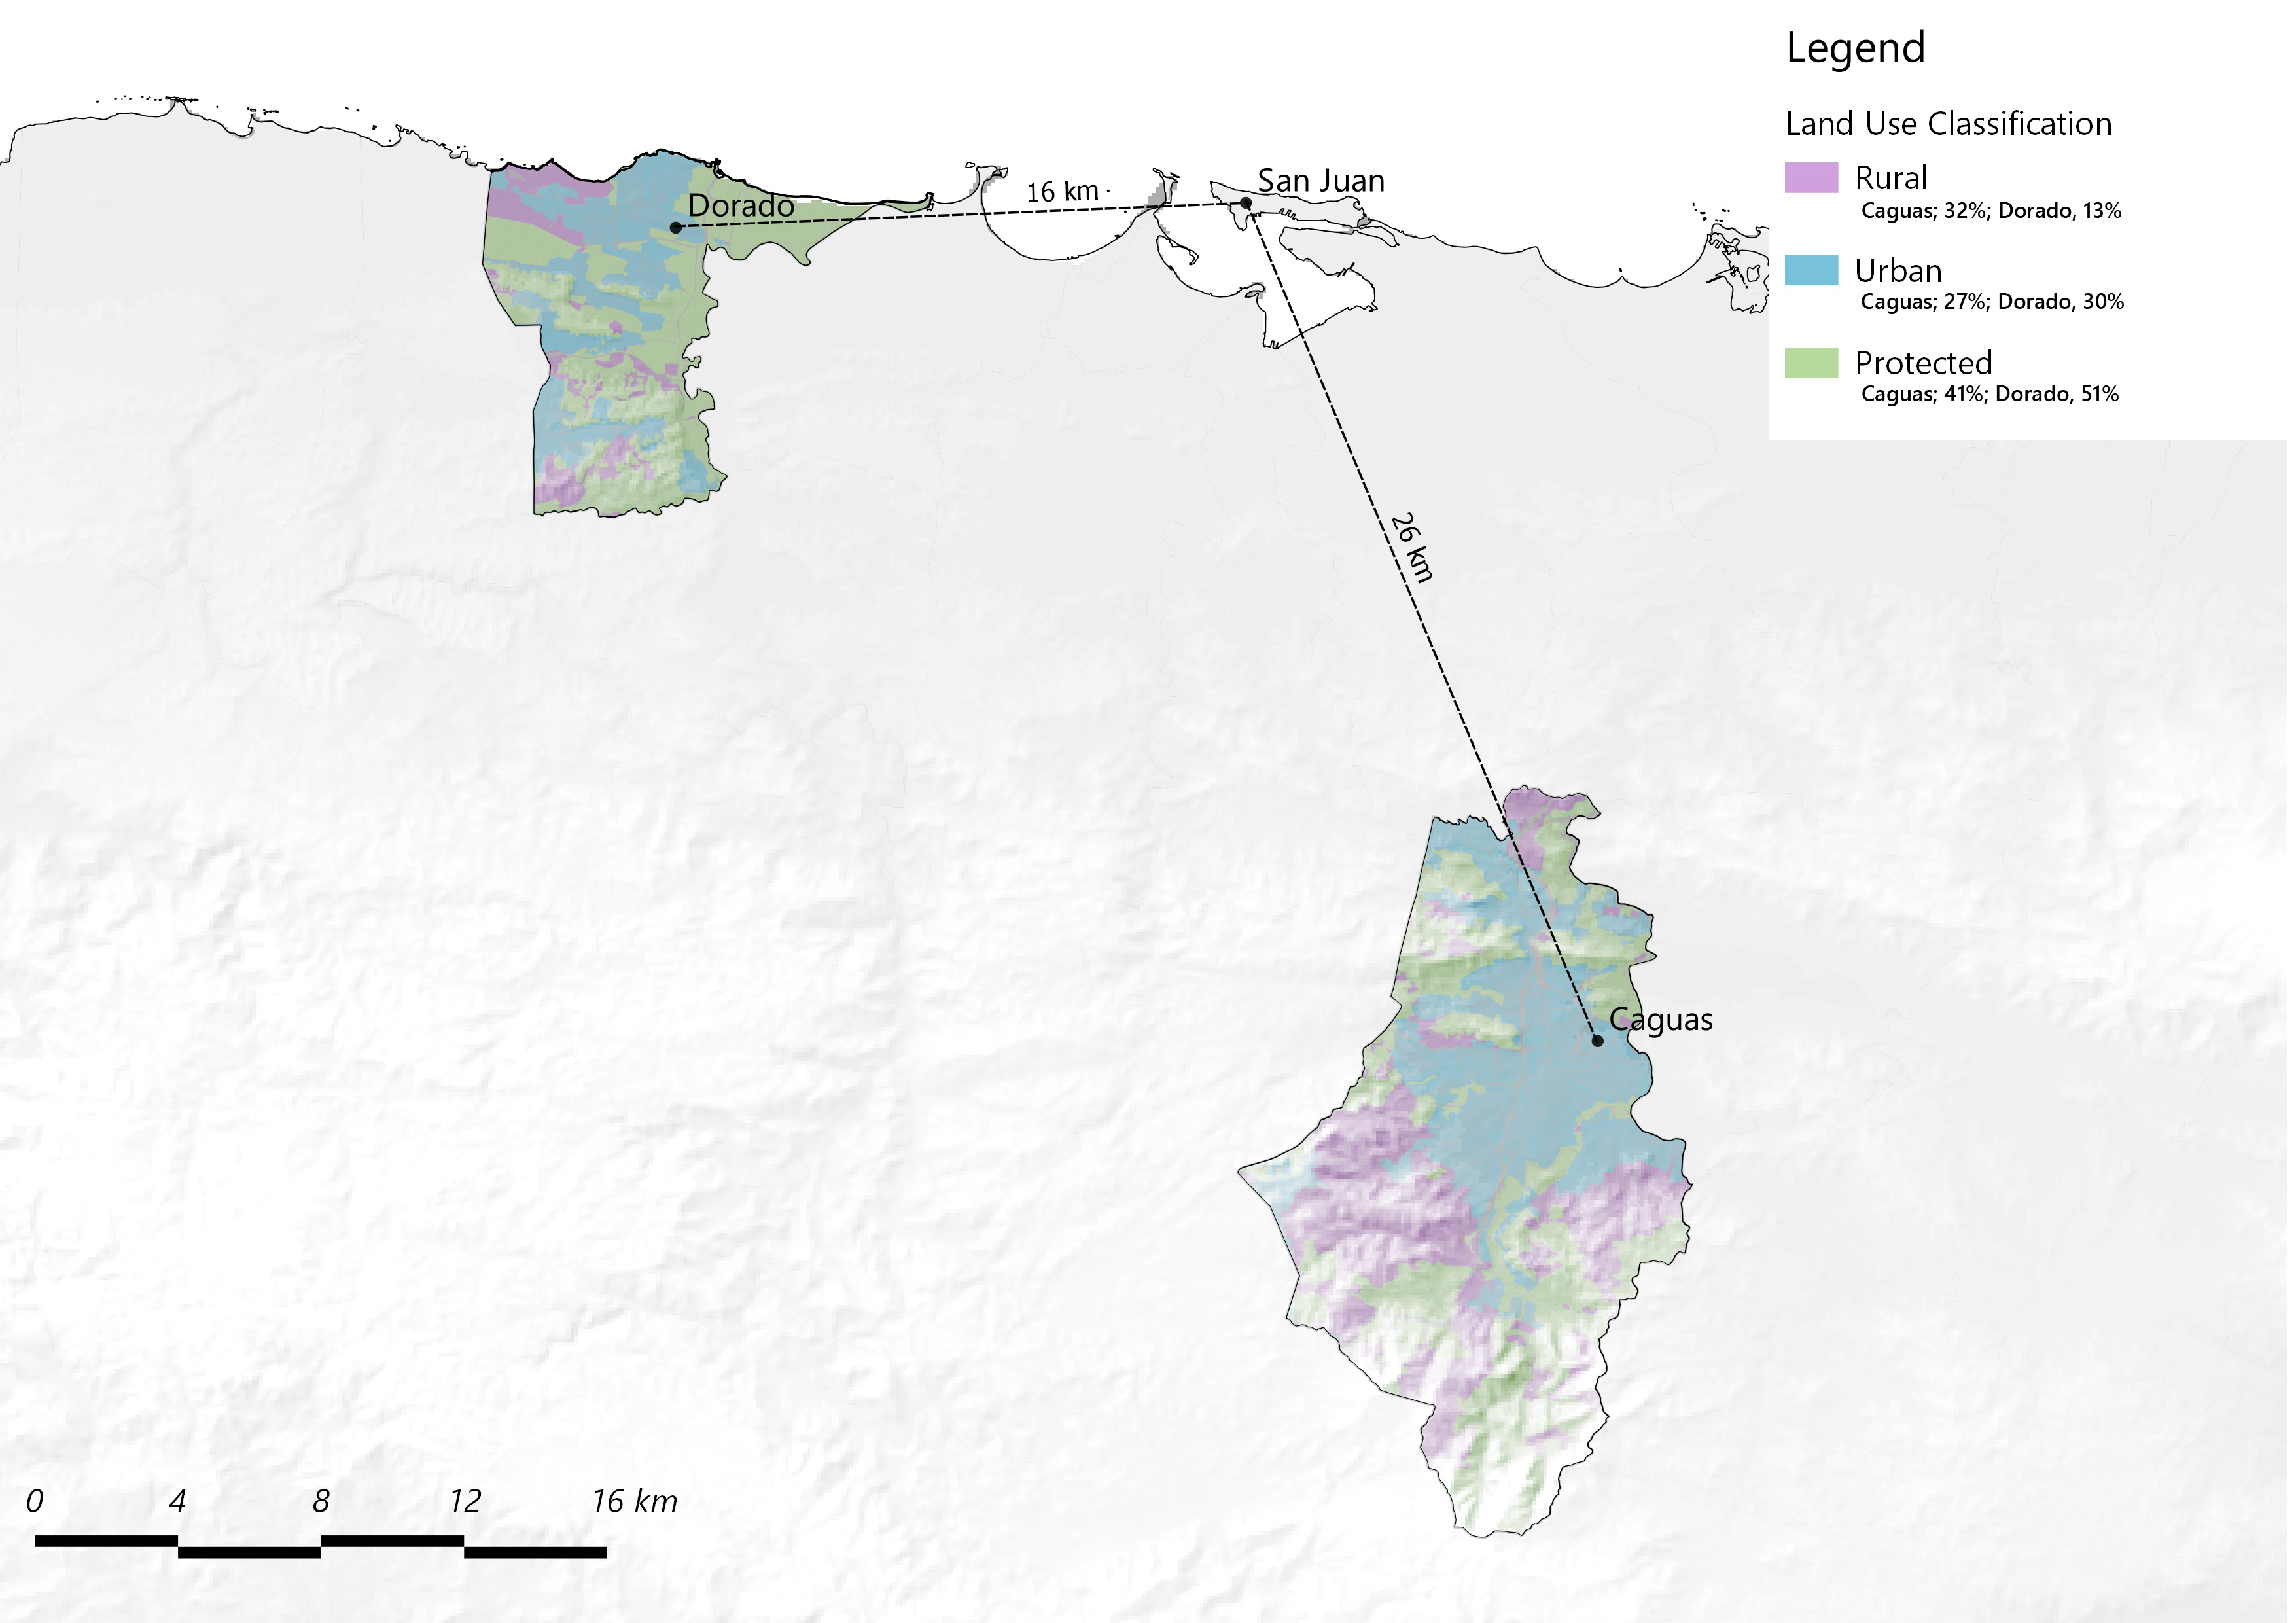 Caguas and Dorado, Land Use Classification